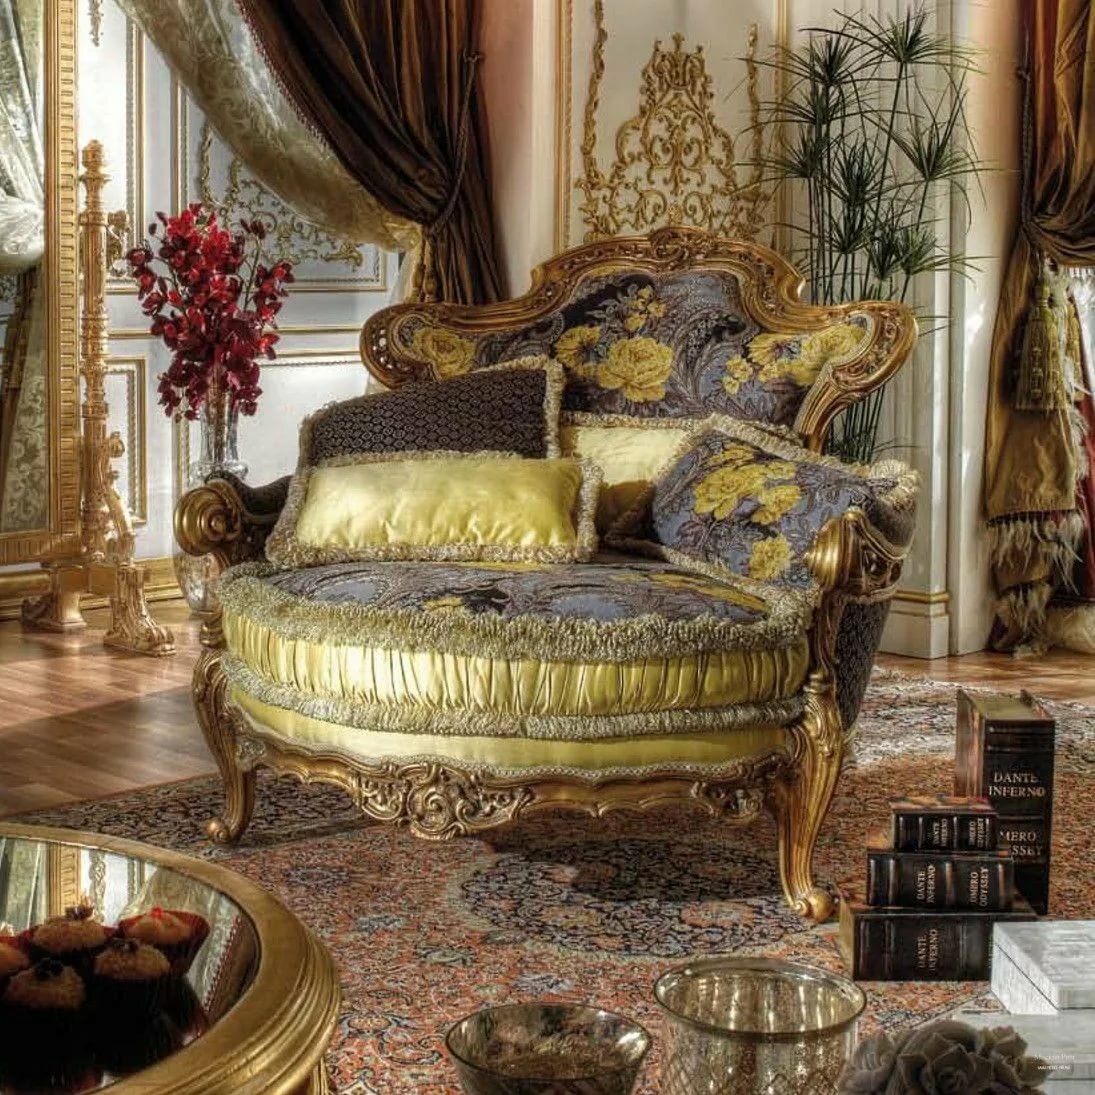 Стиль барокко в интерьере — неприкрытая роскошь и богатство